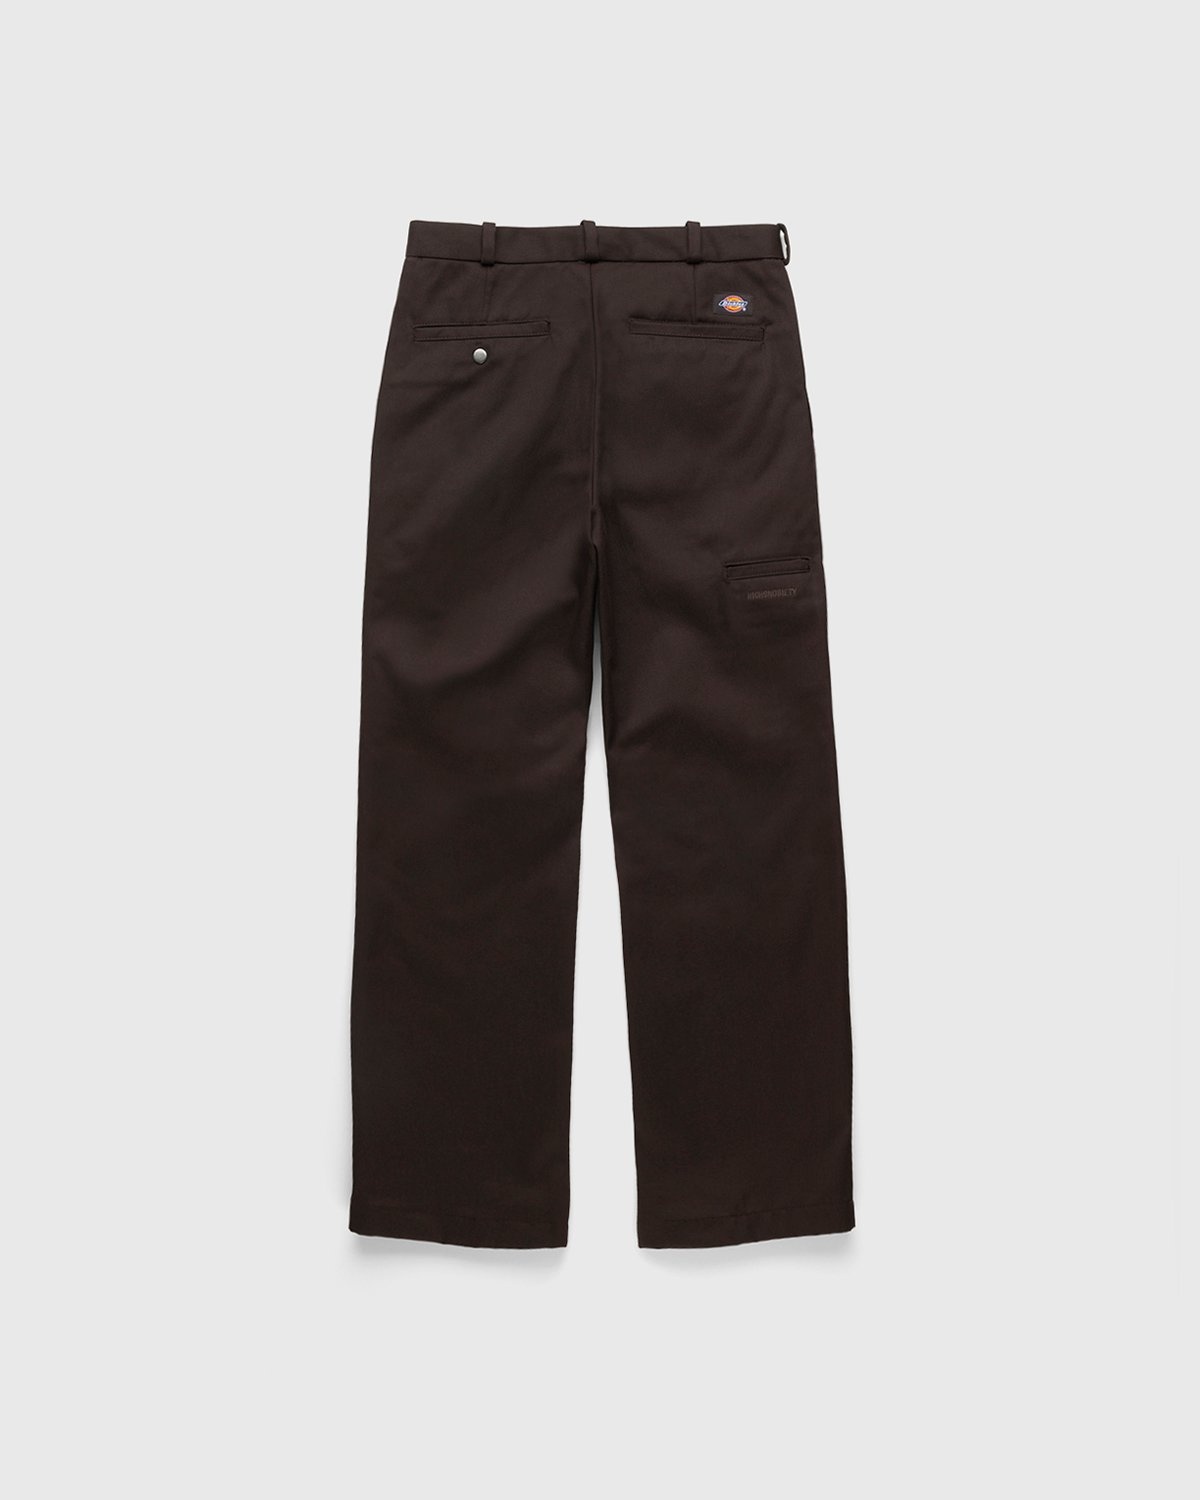 Highsnobiety x Dickies – Pleated Work Pants Dark Brown - Pants - Brown - Image 2